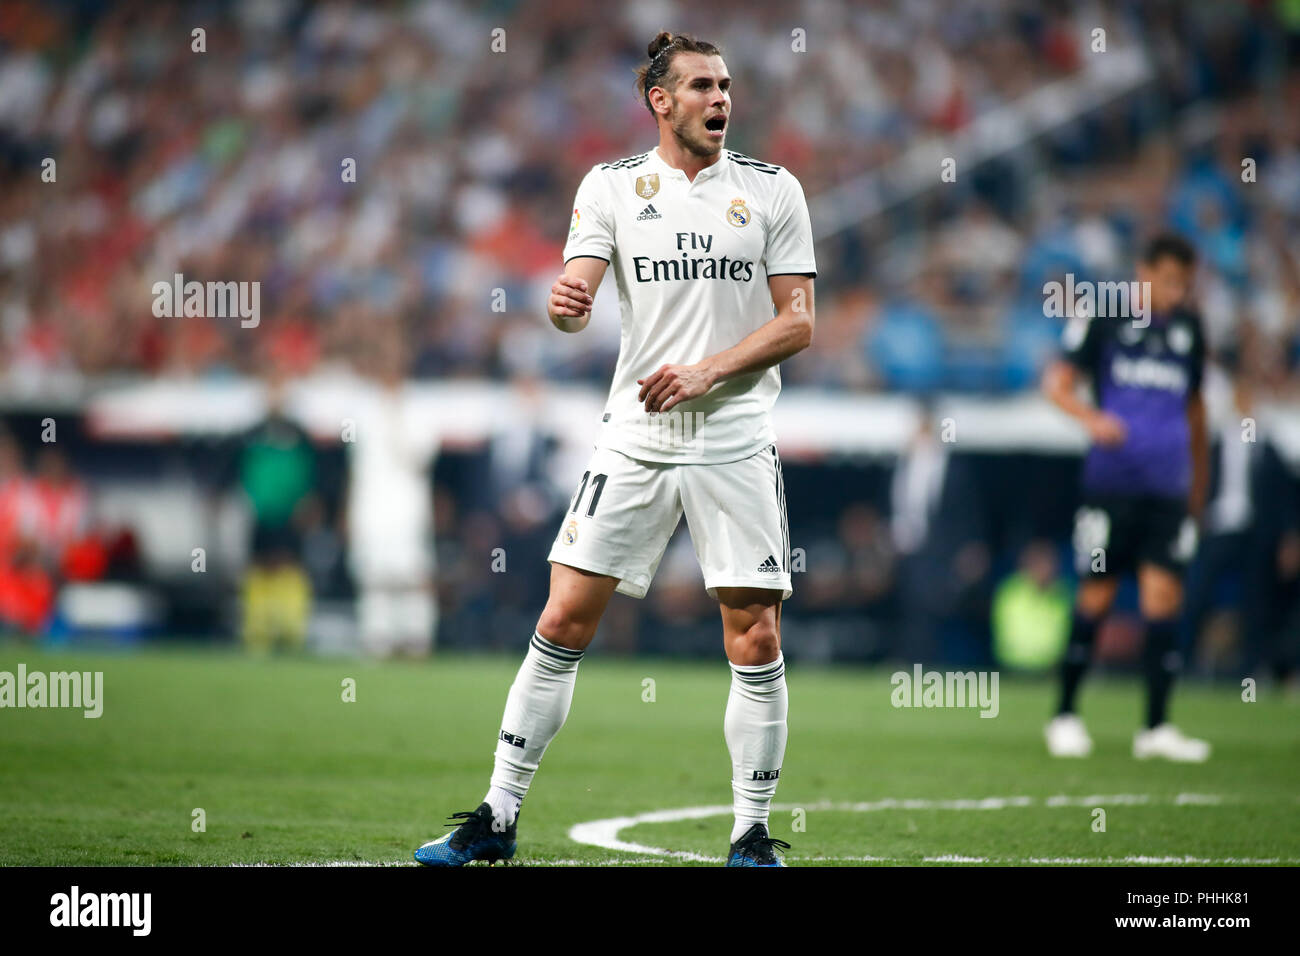 Gareth Bale von Real Madrid zu beklagen, die während der spanischen Liga, der Primera División, Fußballspiel zwischen Real Madrid und Leganes am September 01th, 2018 in Santiago Bernabeu in Madrid, Spanien. 1. Sep 2018. Quelle: AFP 7/ZUMA Draht/Alamy leben Nachrichten Stockfoto